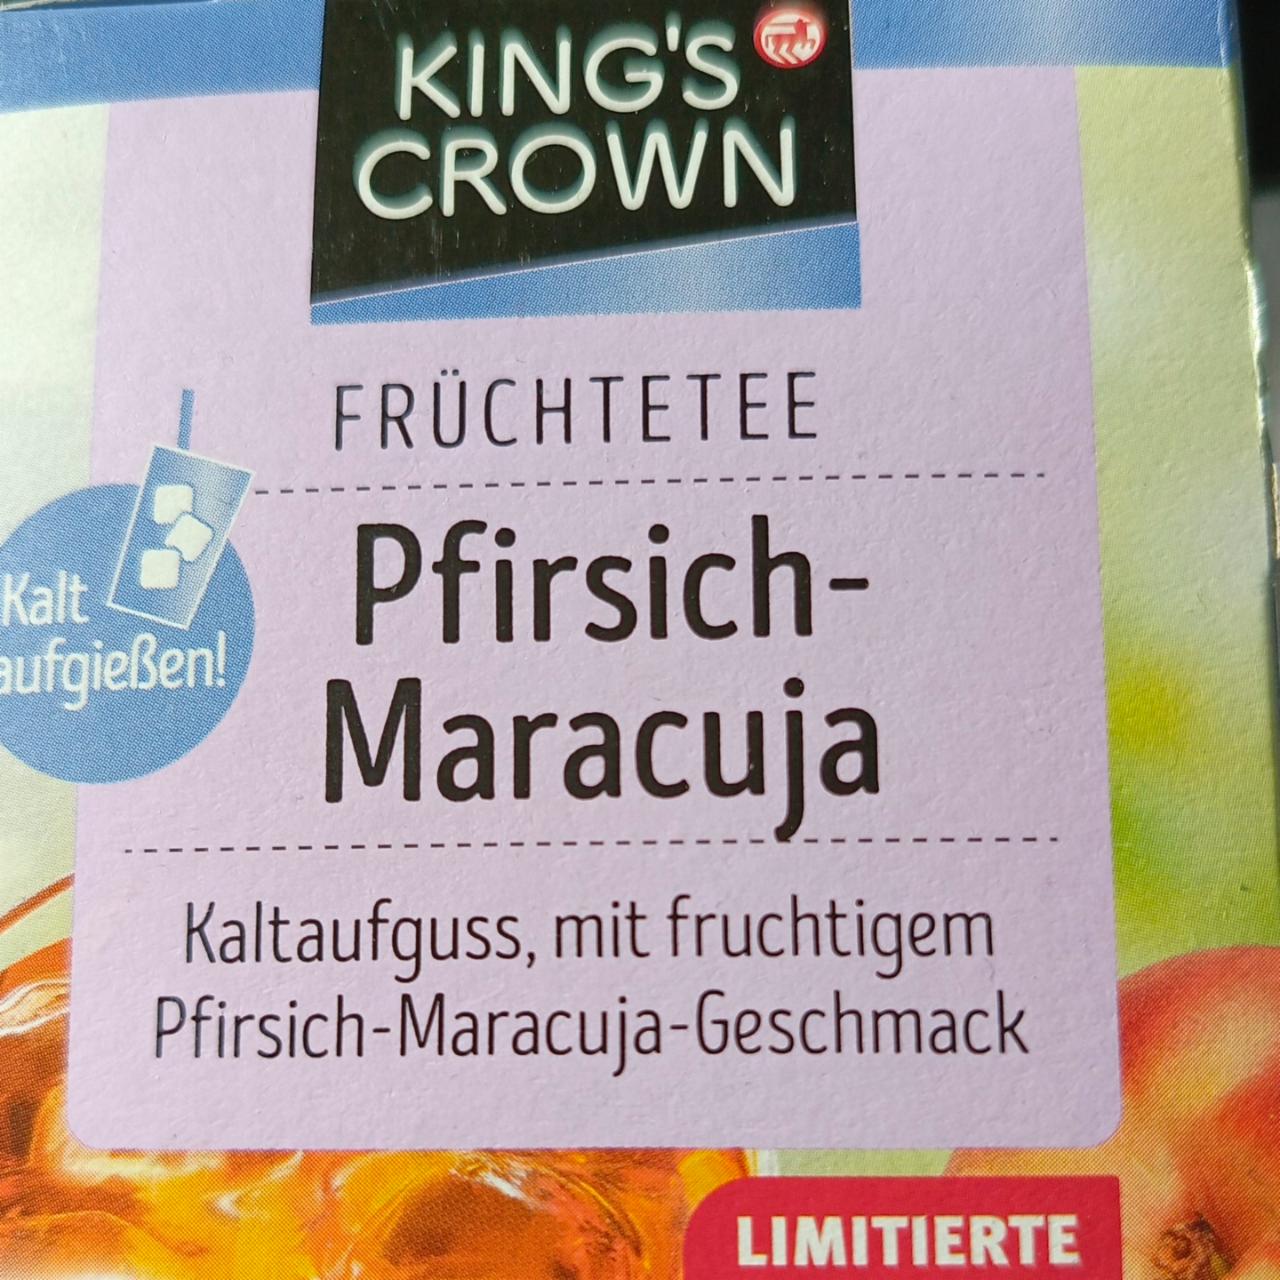 Fotografie - Früchtetee Pfirsich-Maracuja King's Crown